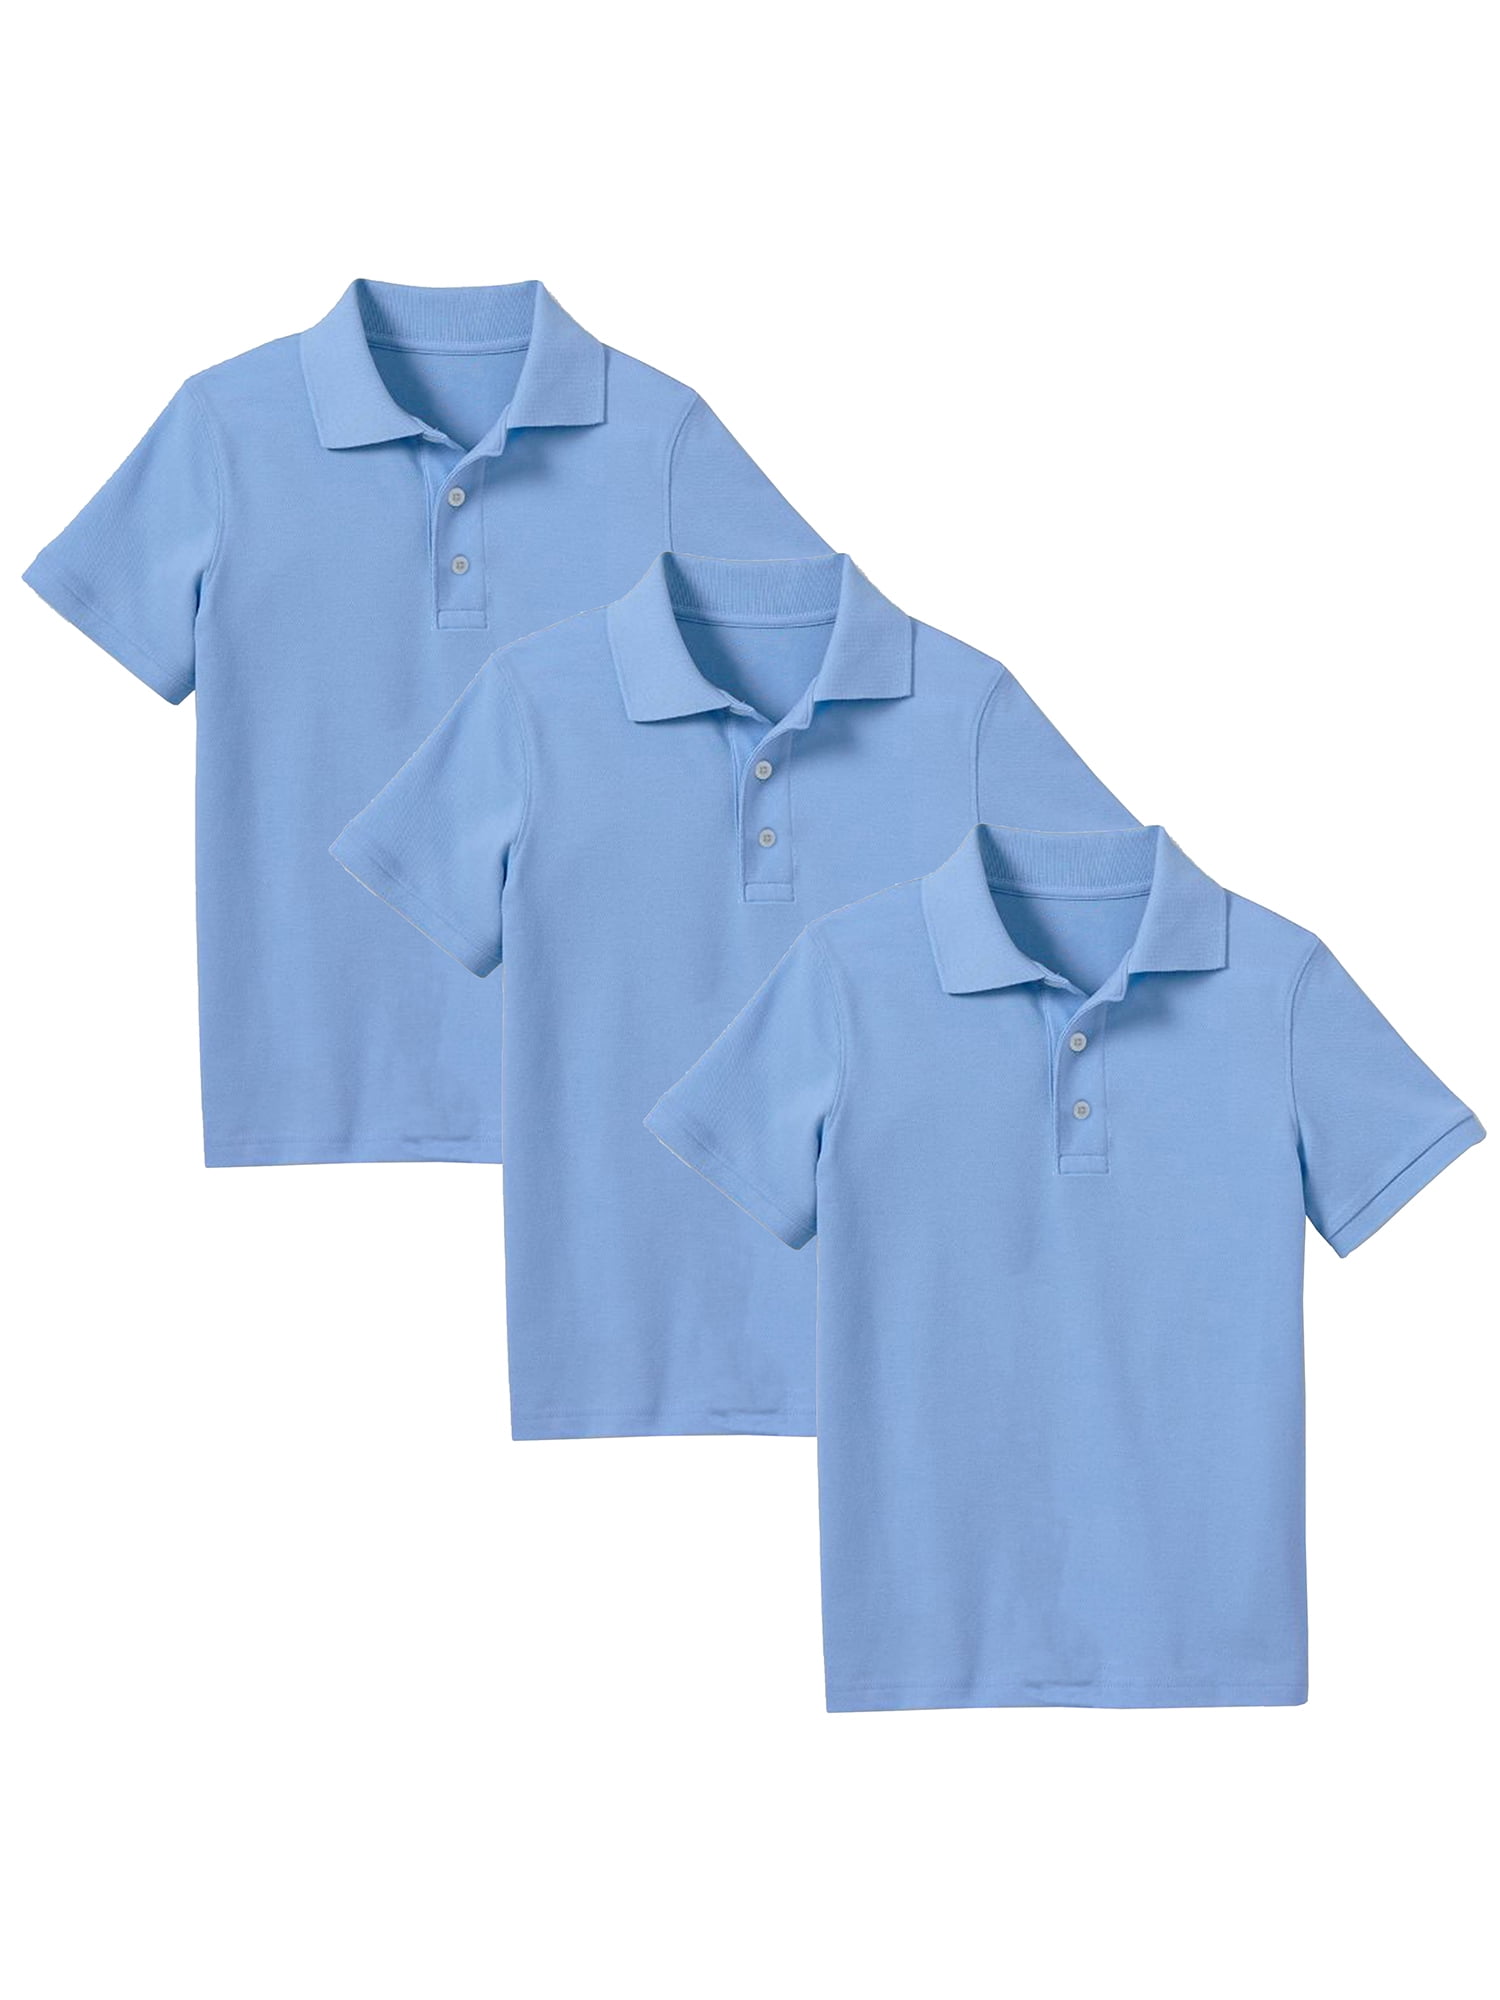 Galaxy Uniform Boys' Short-sleeved Pique Polo Shirt - Navy, 10